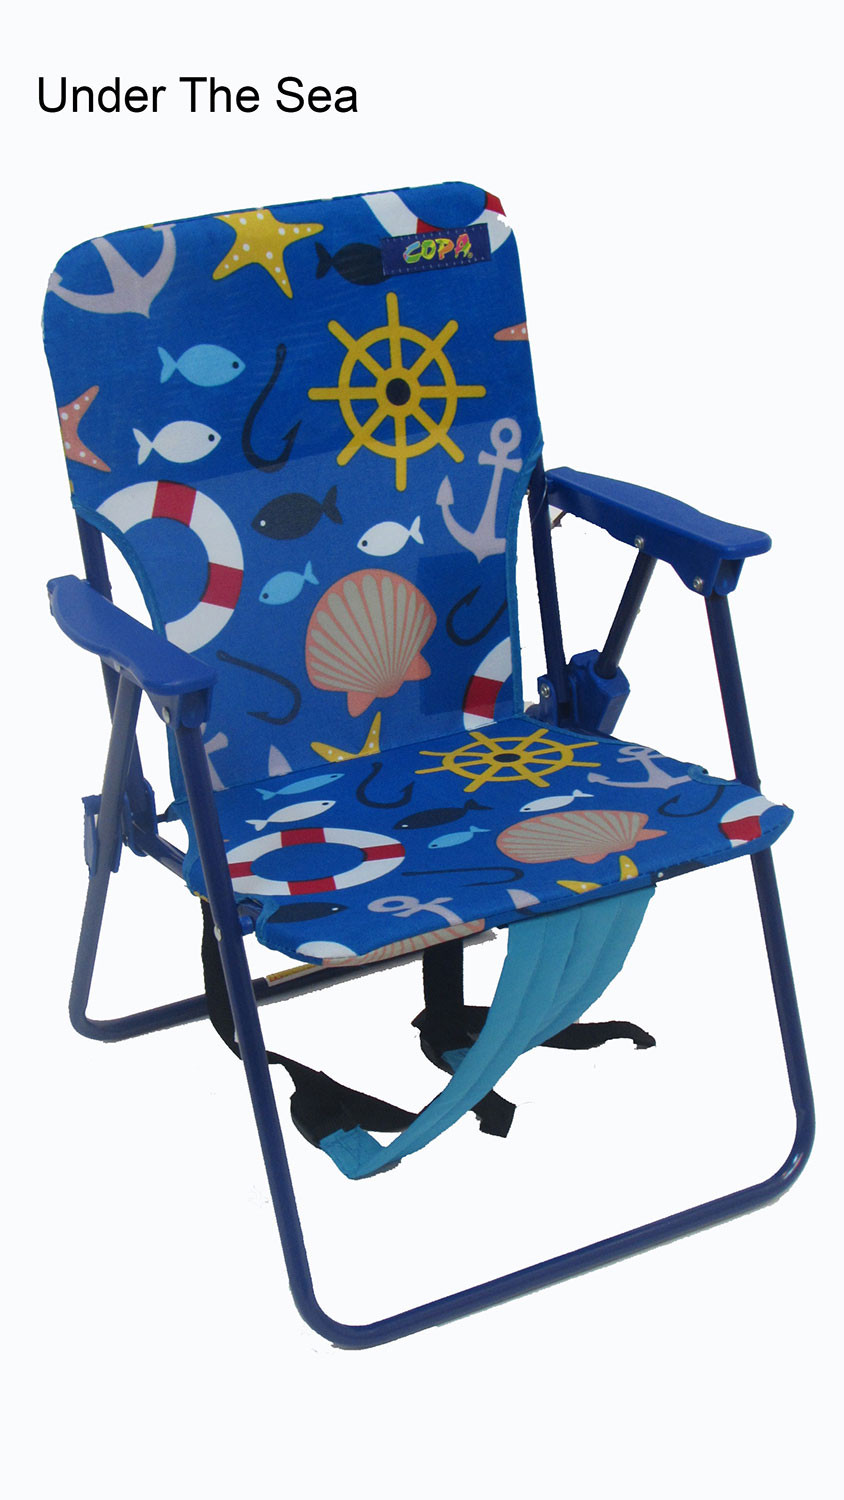 Beach Chair For Kids
 Kids Folding Backpack Beach Chair Wel e Summer Sale